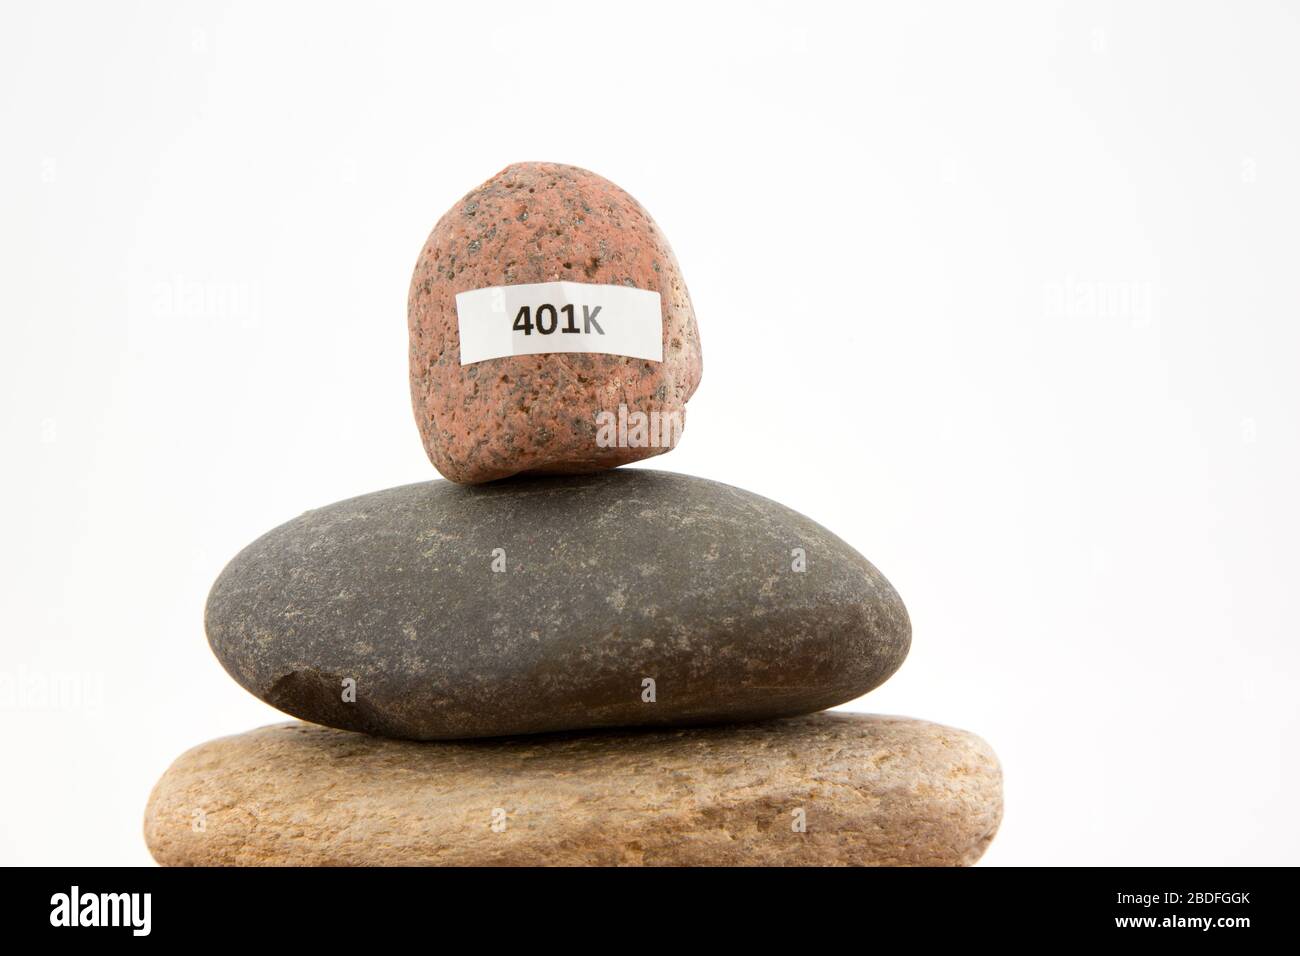 L'image conceptuelle d'une pierre de 401 K prééquilibrée reflète une crise économique dangereuse et un danger financier personnel Banque D'Images